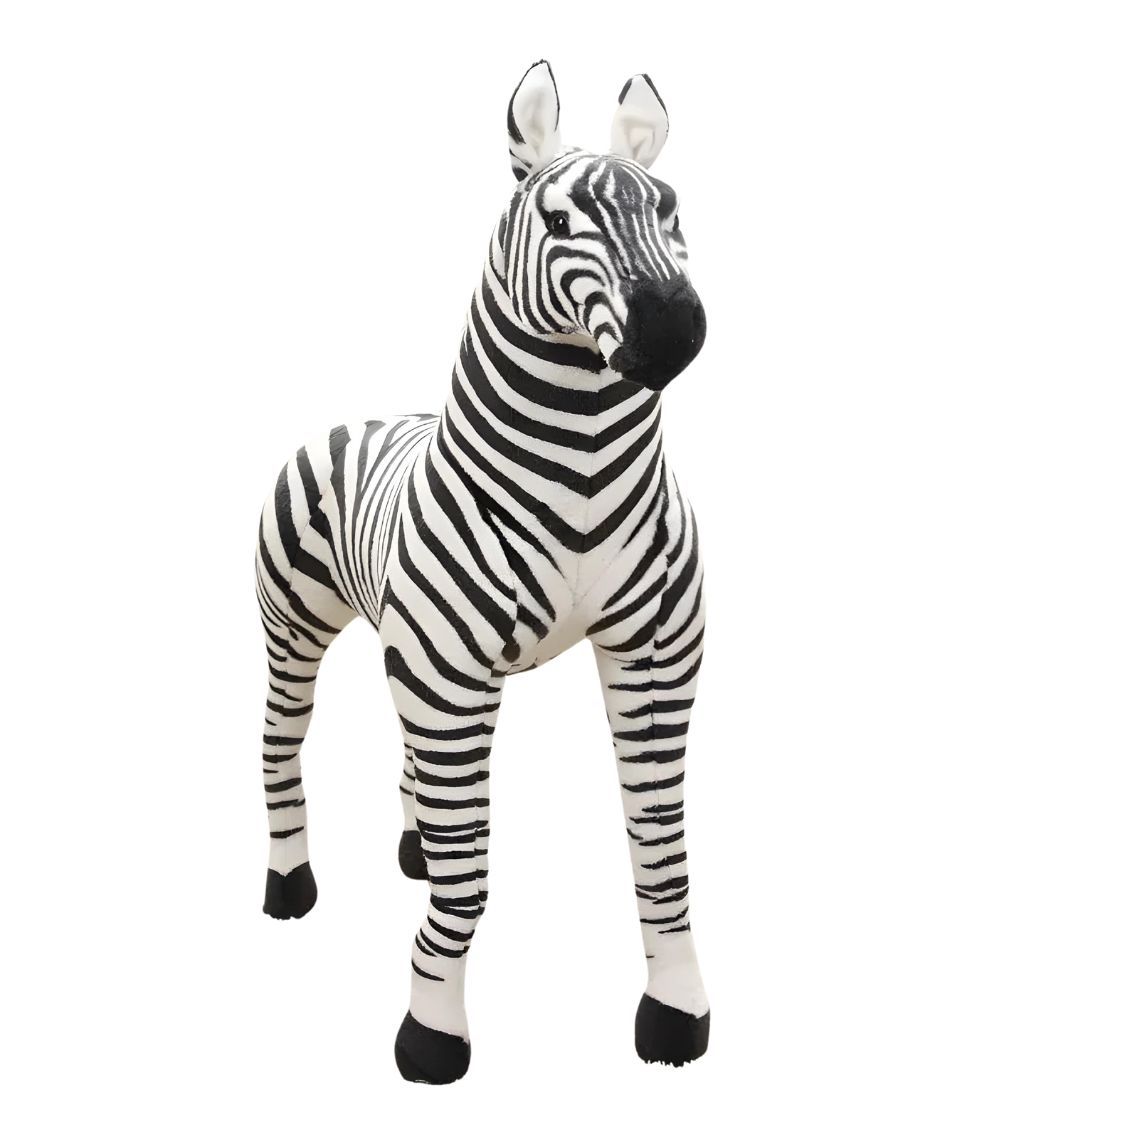 Giant Zebra Safari Animal Toy